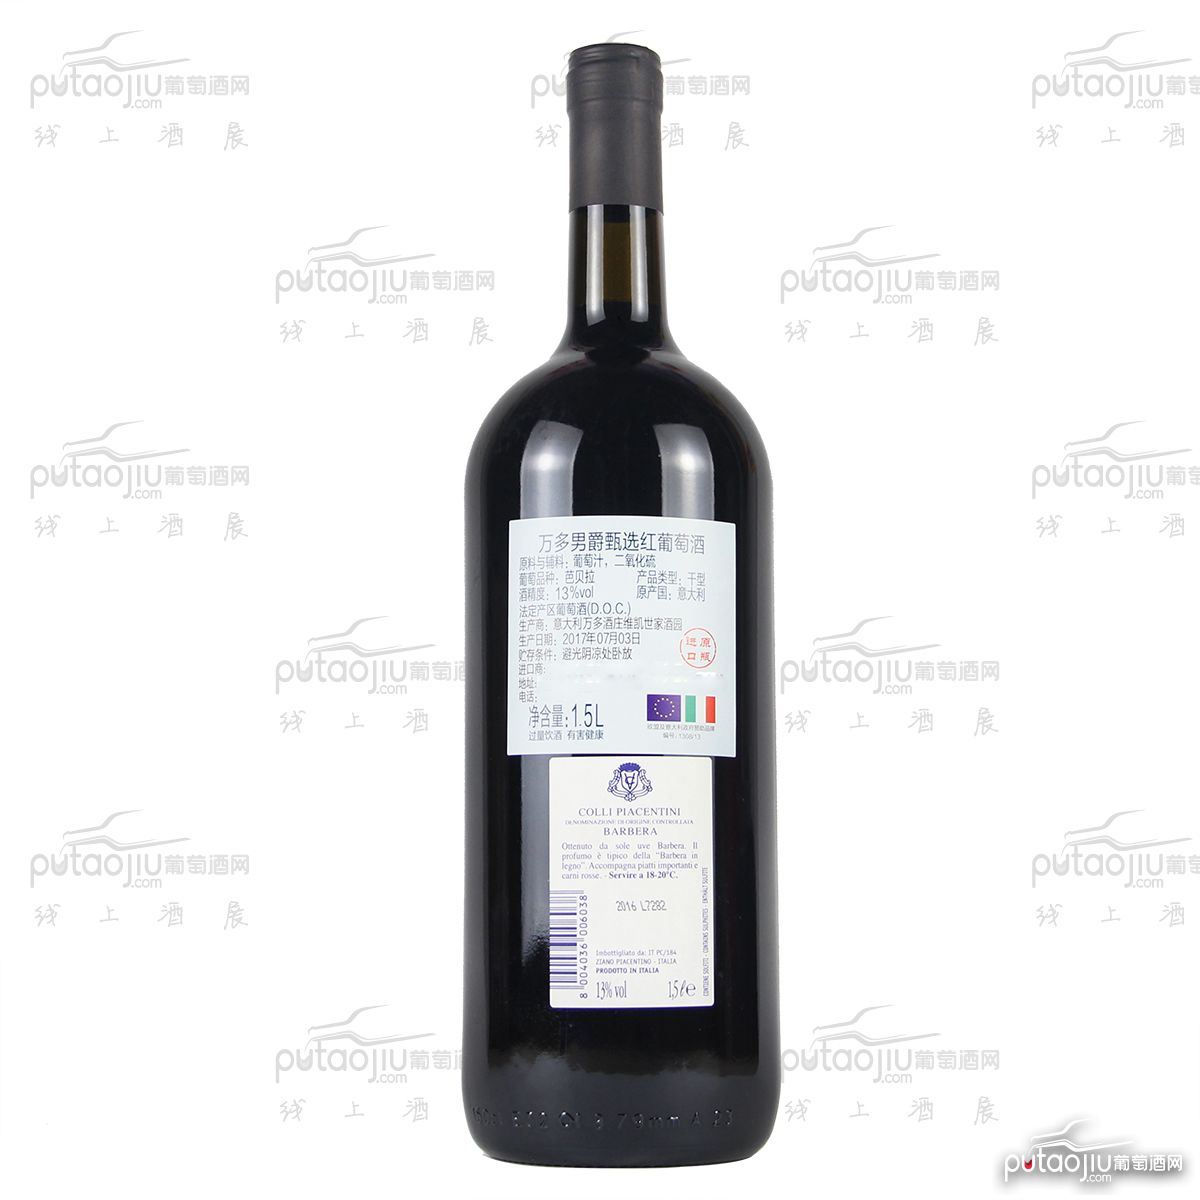 意大利艾米利亚万多酒庄巴贝拉男爵甄选DOC干红葡萄酒1.5L